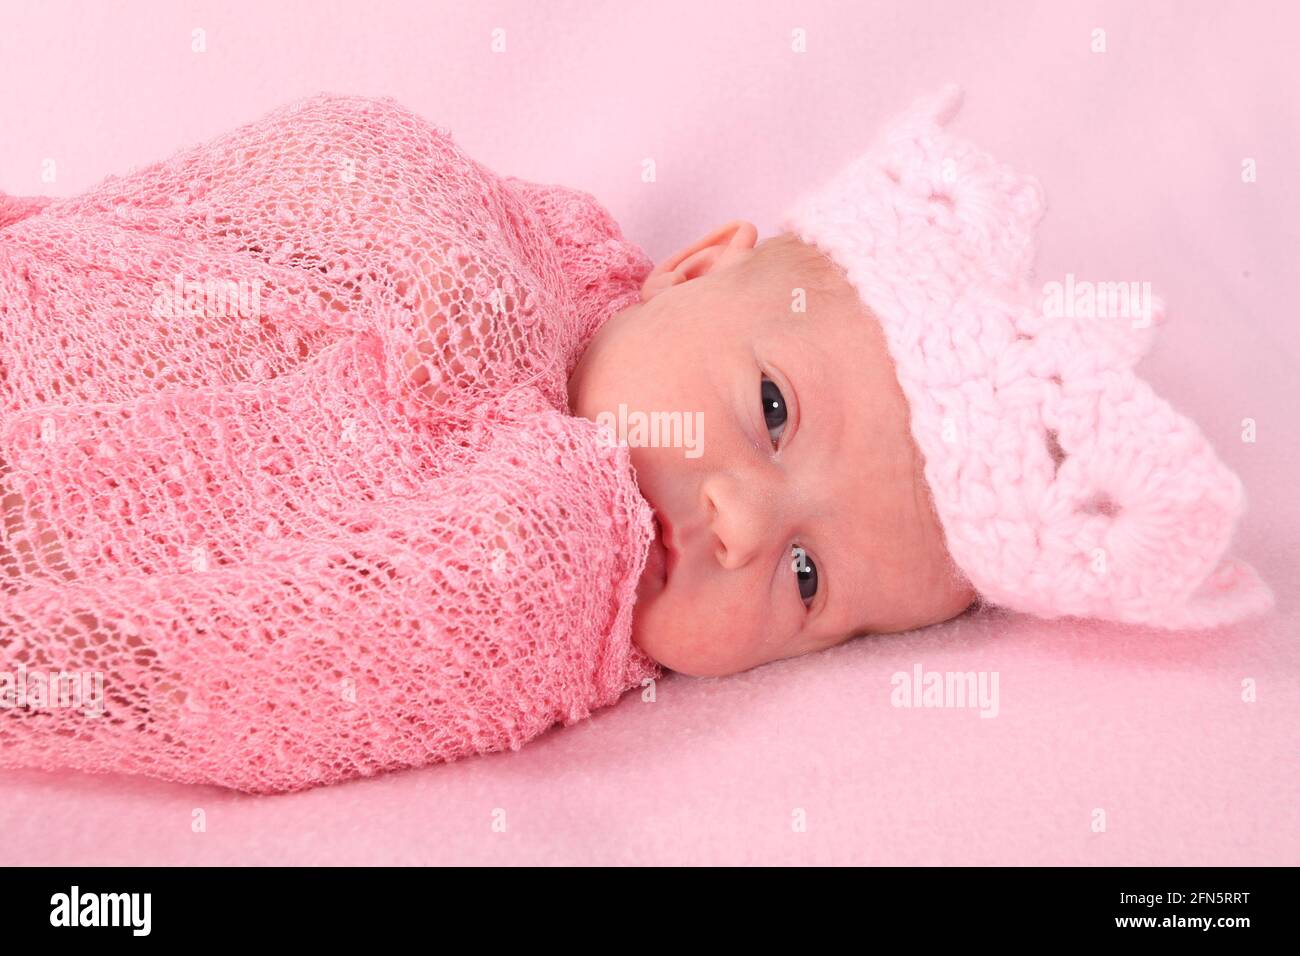 abrazo Promesa Marchito maternity hospital, baby girl ready yo go home to loving family Stock Photo  - Alamy